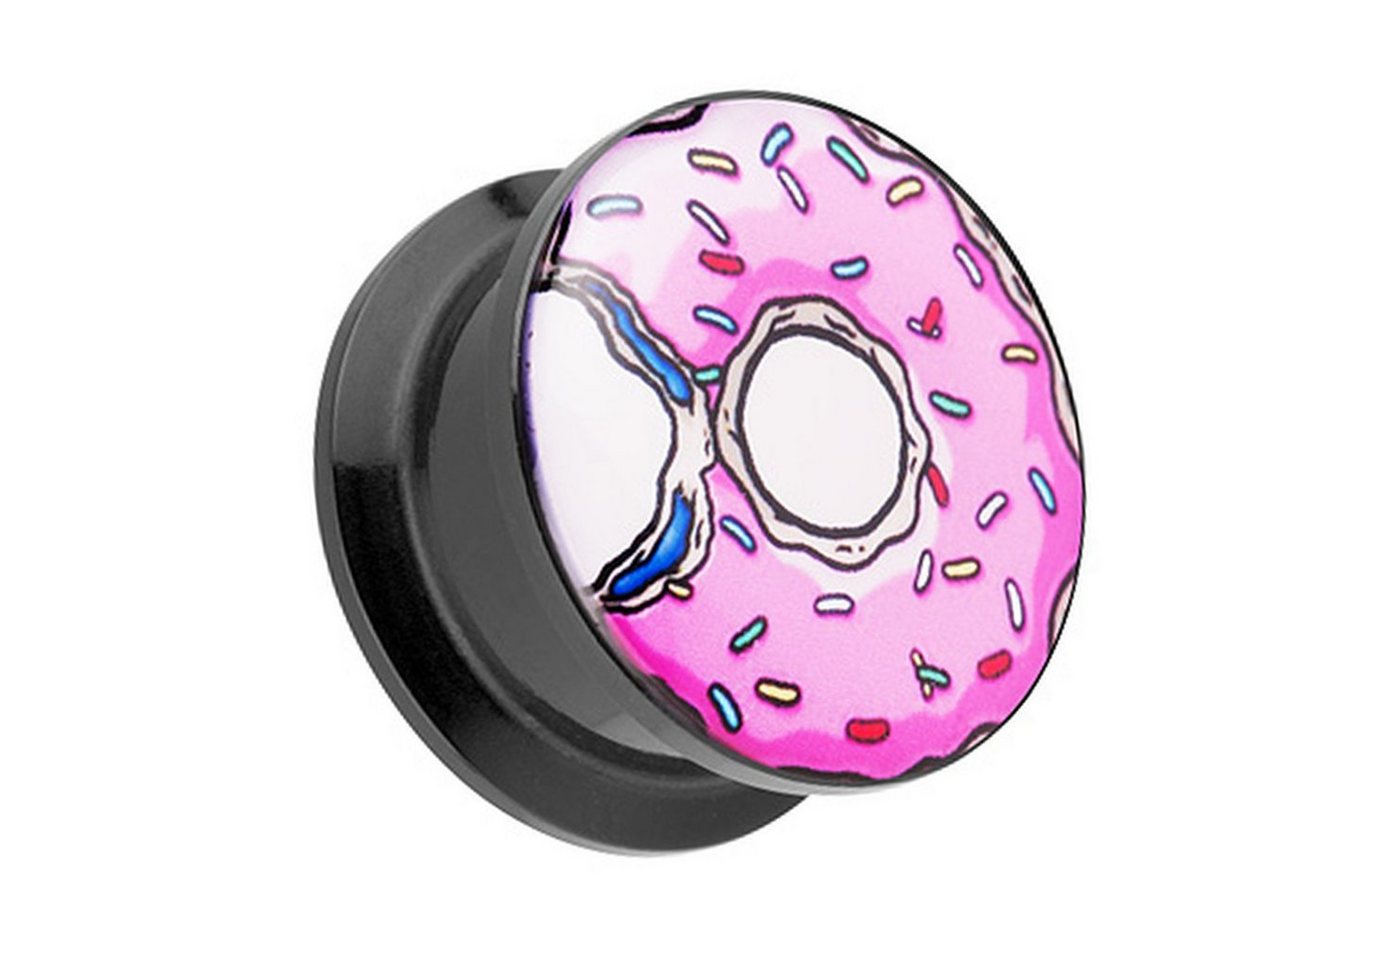 Taffstyle Plug Piercing Schraub Picture mit Donut bunten Streusel, Ohr Plug Flesh Tunnel Ohrpiercing Kunststoff Schraubverschluß Picture von Taffstyle